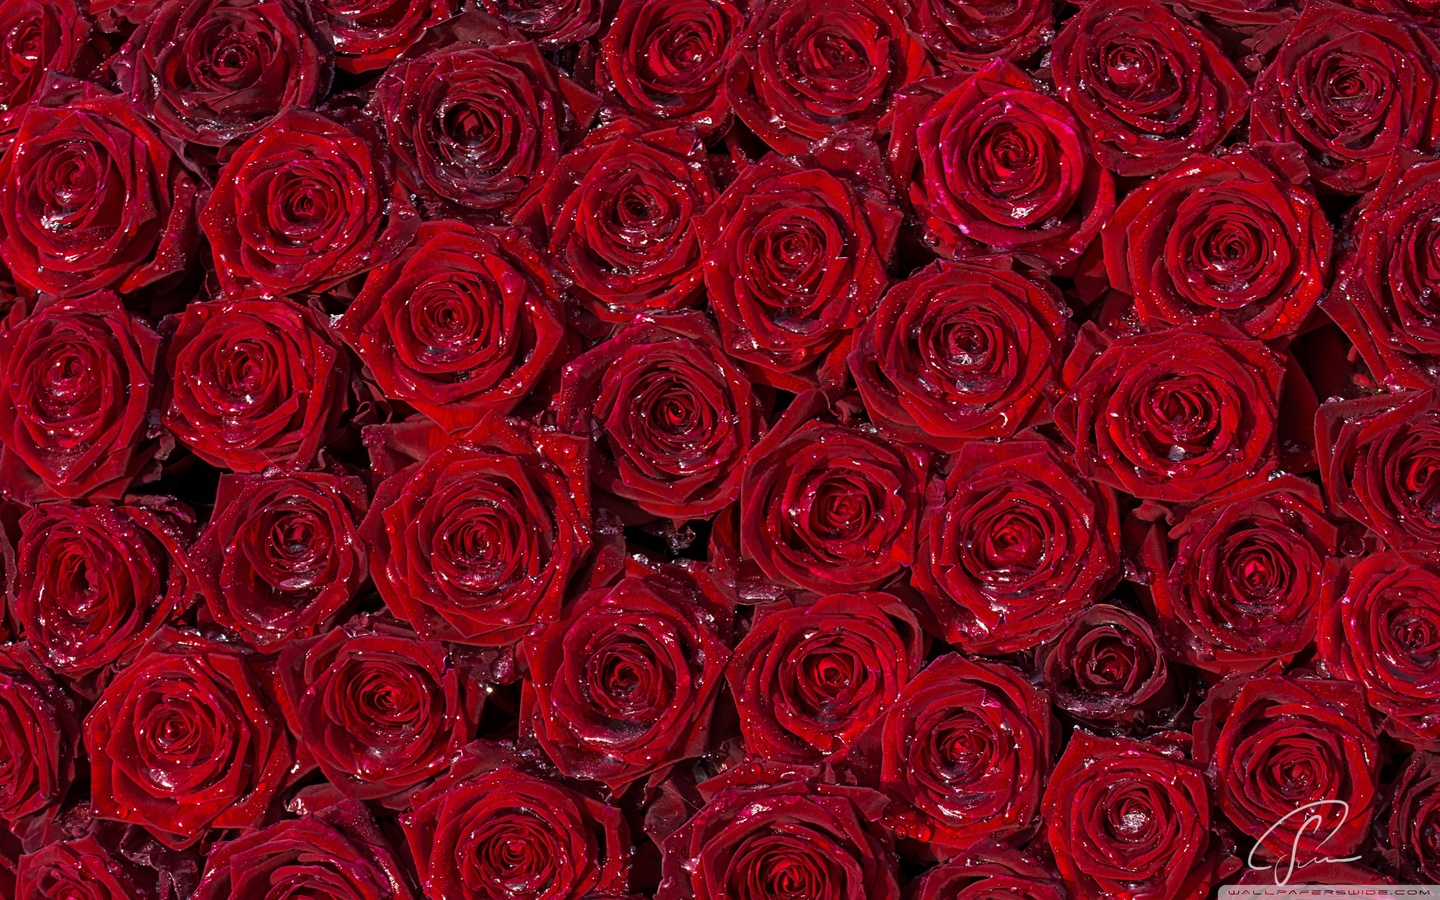  红玫瑰电脑壁纸图片大全 